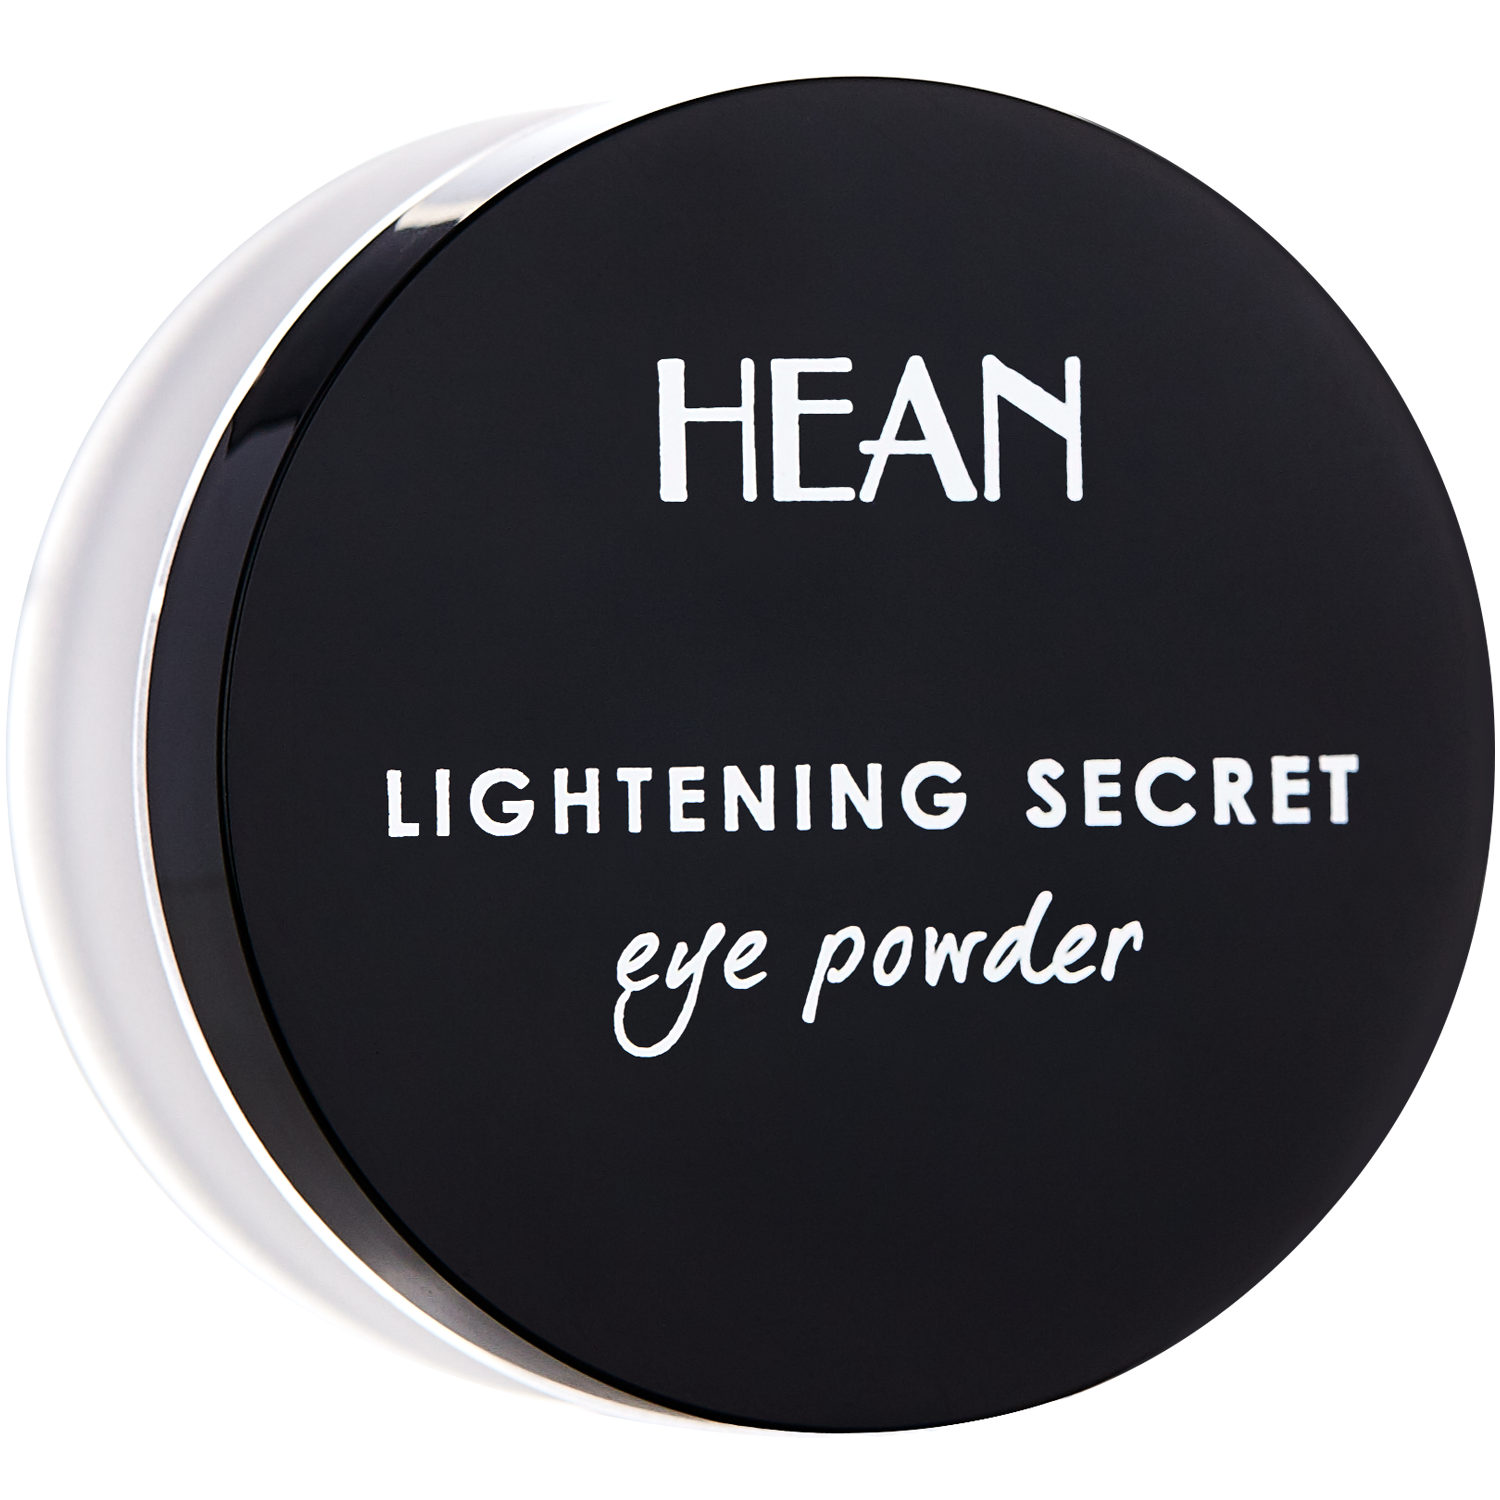 Hean Lightening Secret